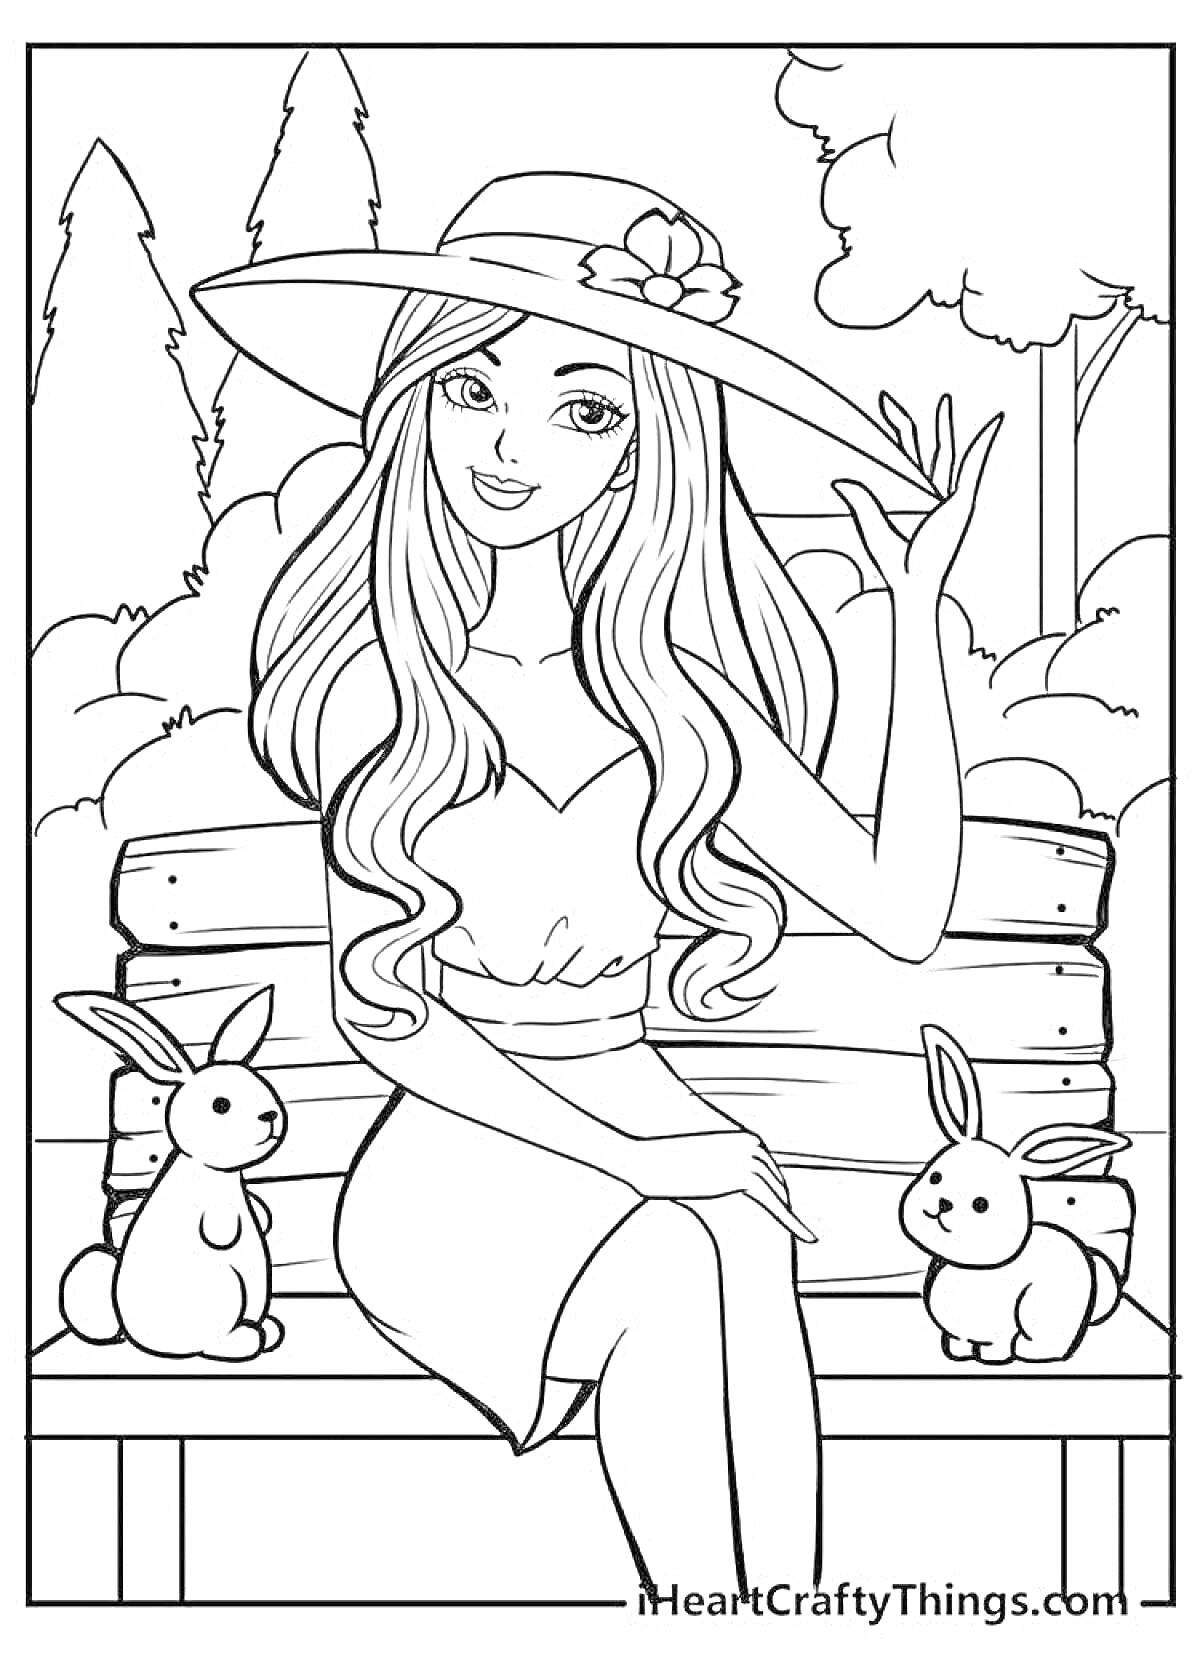 Раскраска Барби в шляпе на скамейке с двумя кроликами на фоне деревьев и кустарников